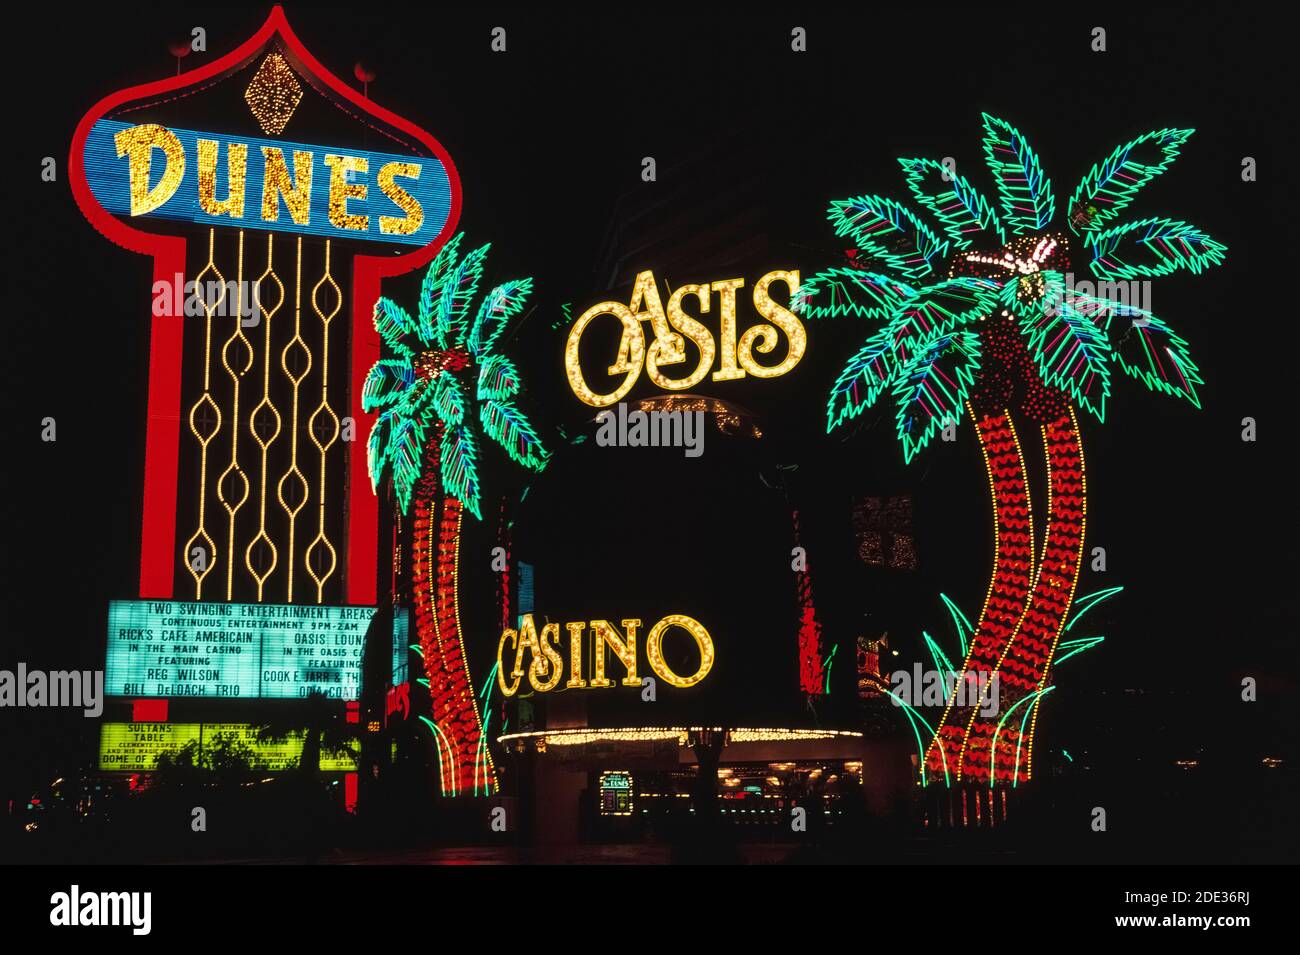 Las luces de neón y otras luces coloridas hicieron que estas señales al aire libre para el hotel Dunes y su casino Oasis se destacaran por la noche a lo largo de las Vegas Boulevard, más conocido como el Strip, una carretera bordeada de espectaculares hoteles y casinos al sur de los límites de la ciudad de las Vegas, Nevada, Estados Unidos. Las Dunas abrió en 1955, una atracción temprana en ese destino del desierto notorio bien conocido por sus juegos de azar y buenos tiempos. Cuando el hotel fue demolido en 1993 para hacer espacio para el nuevo Bellagio mega-resort, estos signos y palmeras de neón se perdieron a causa de la historia. Foto de stock